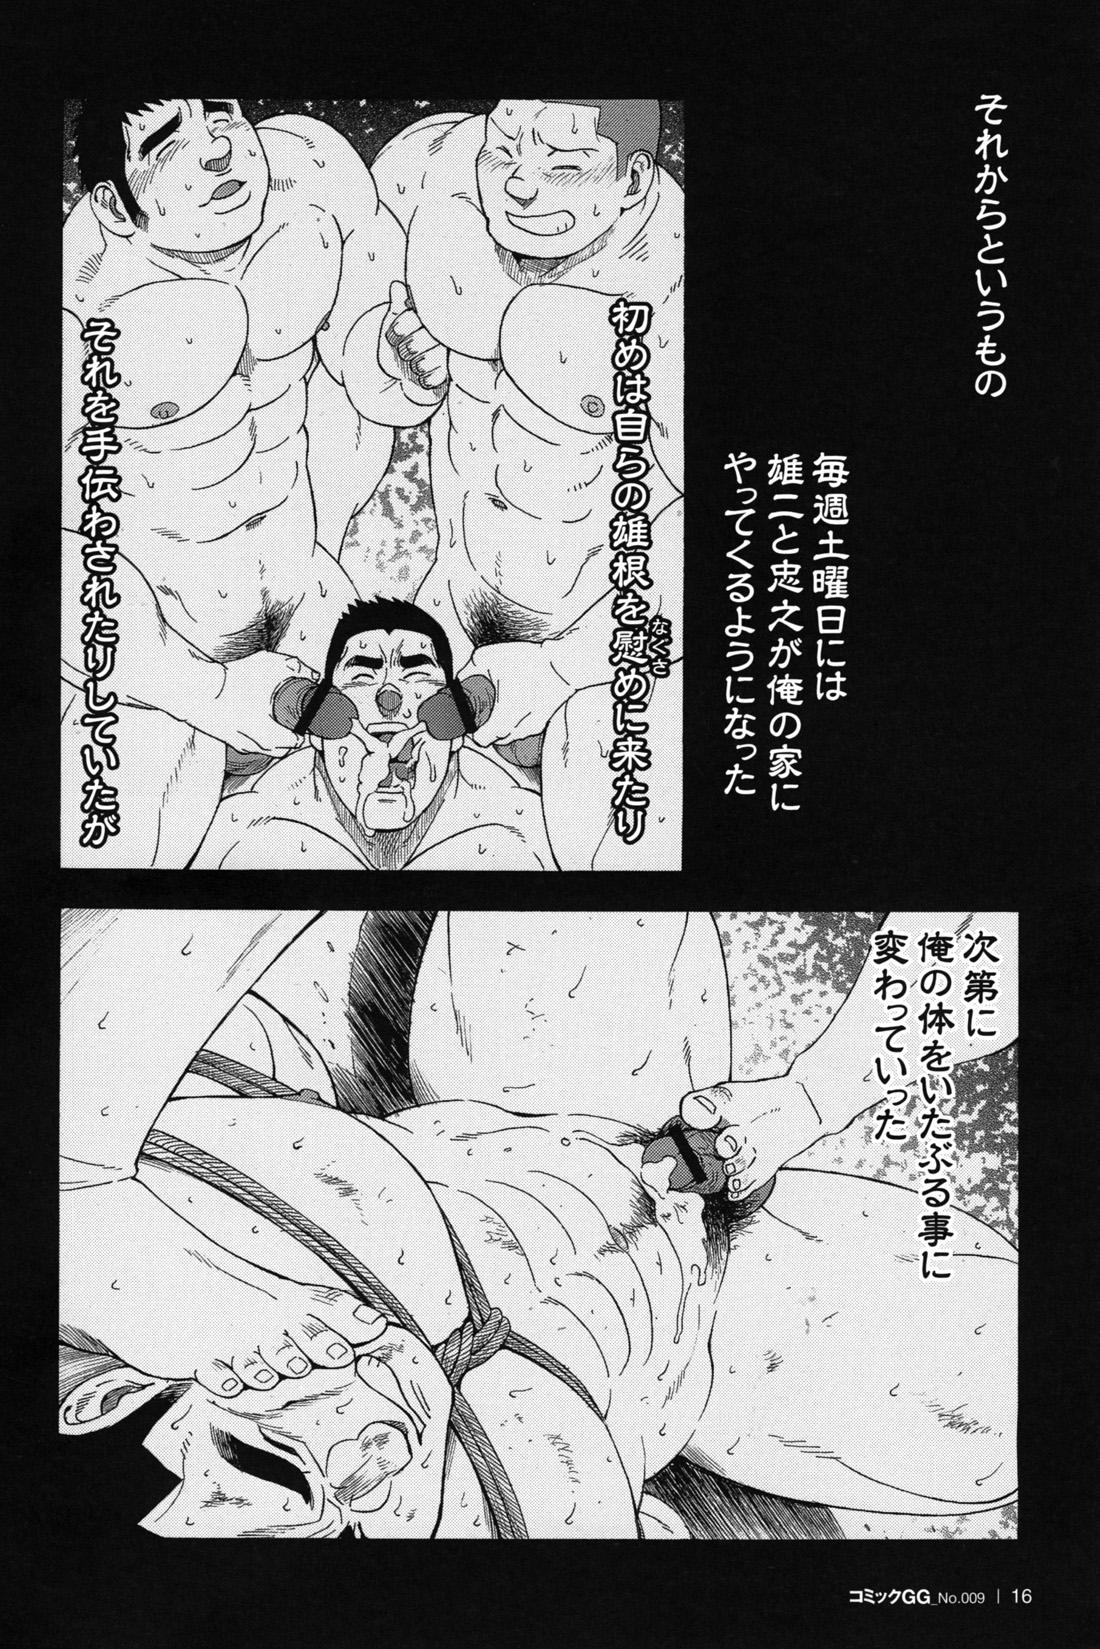 Comic G-men Gaho No.09 Gacchibi Zeme 16